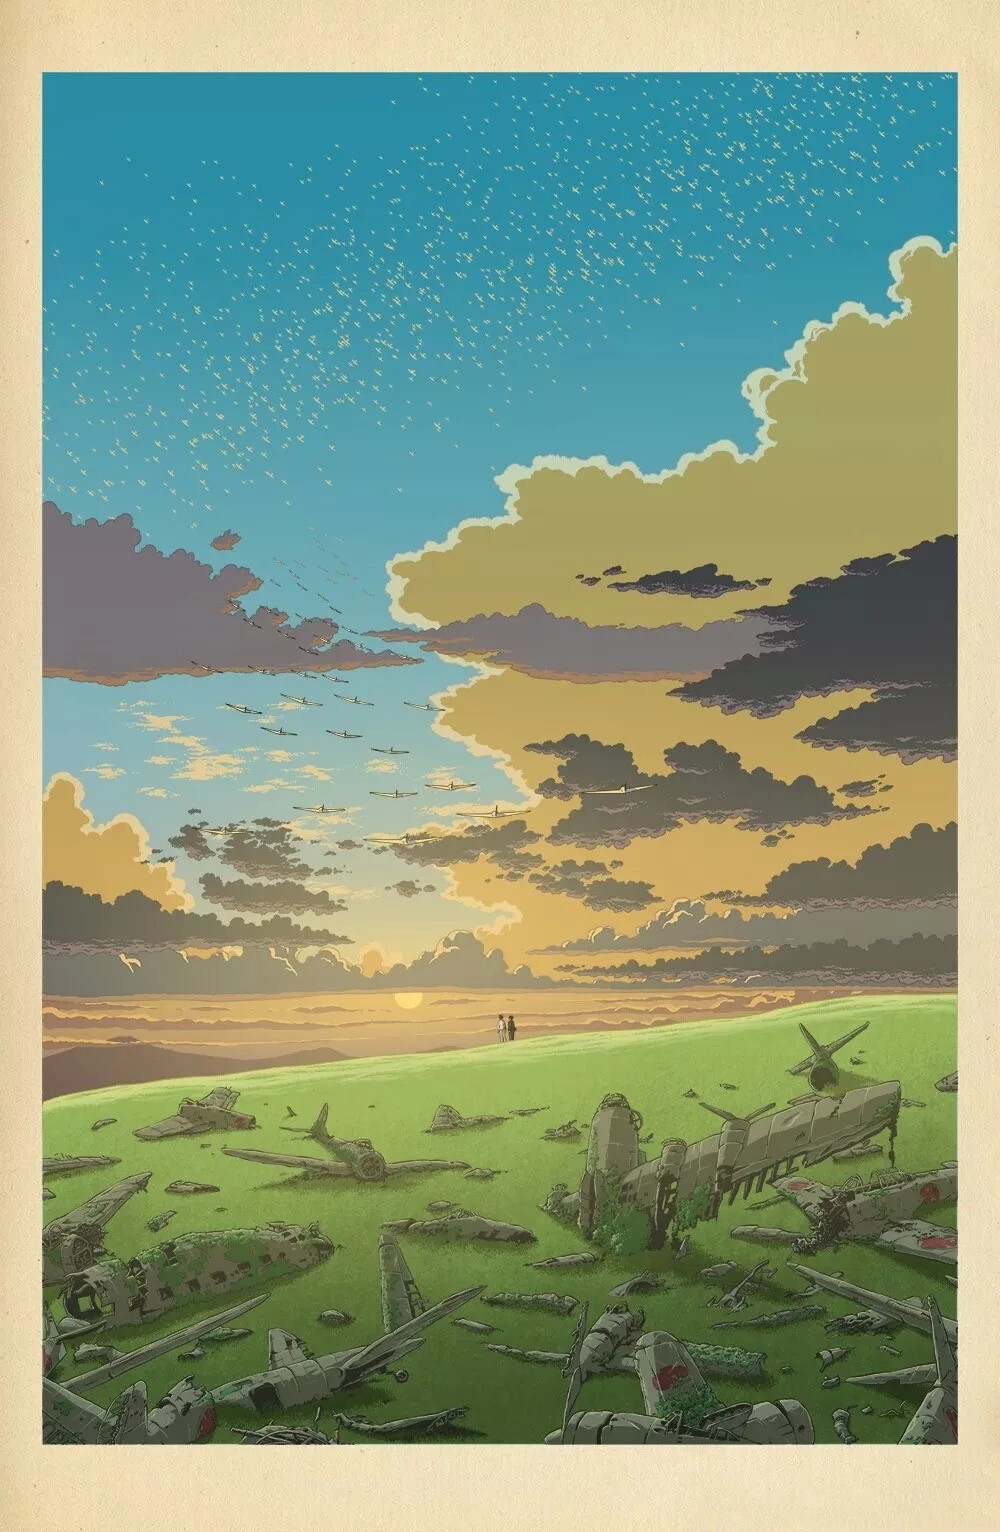 作者：Bill Mudron 美国插画师
宫崎骏动漫世界里
天空很蓝，阳光温暖